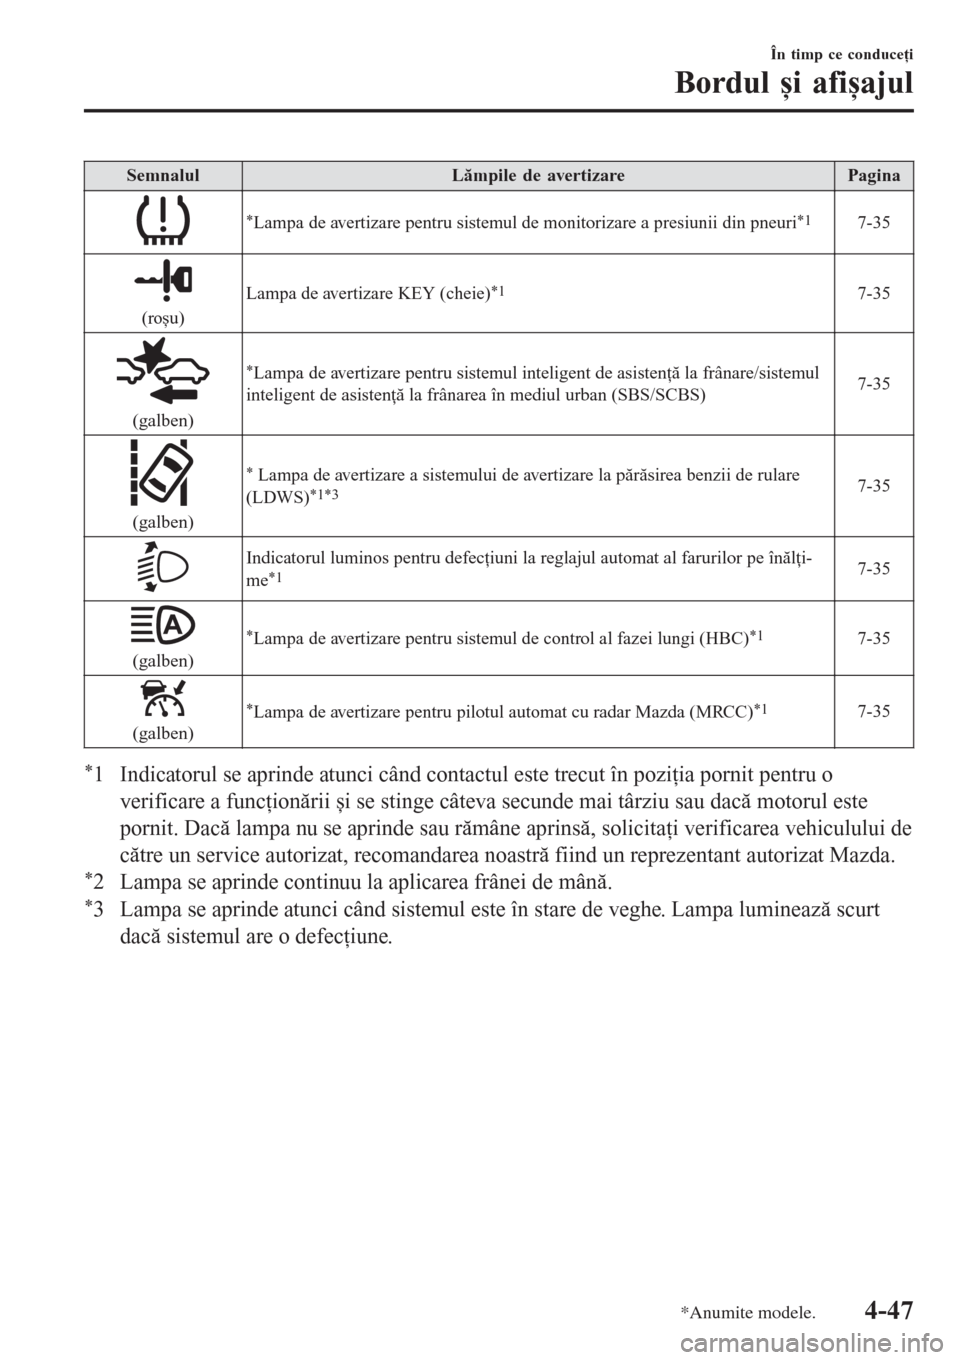 MAZDA MODEL 3 HATCHBACK 2015  Manualul de utilizare (in Romanian) SemnalulLămpile de avertizarePagina
*Lampa de avertizare pentru sistemul de monitorizare a presiunii din pneuri*17-35
(roșu)Lampa de avertizare KEY (cheie)
*17-35
(galben)
*Lampa de avertizare pentr